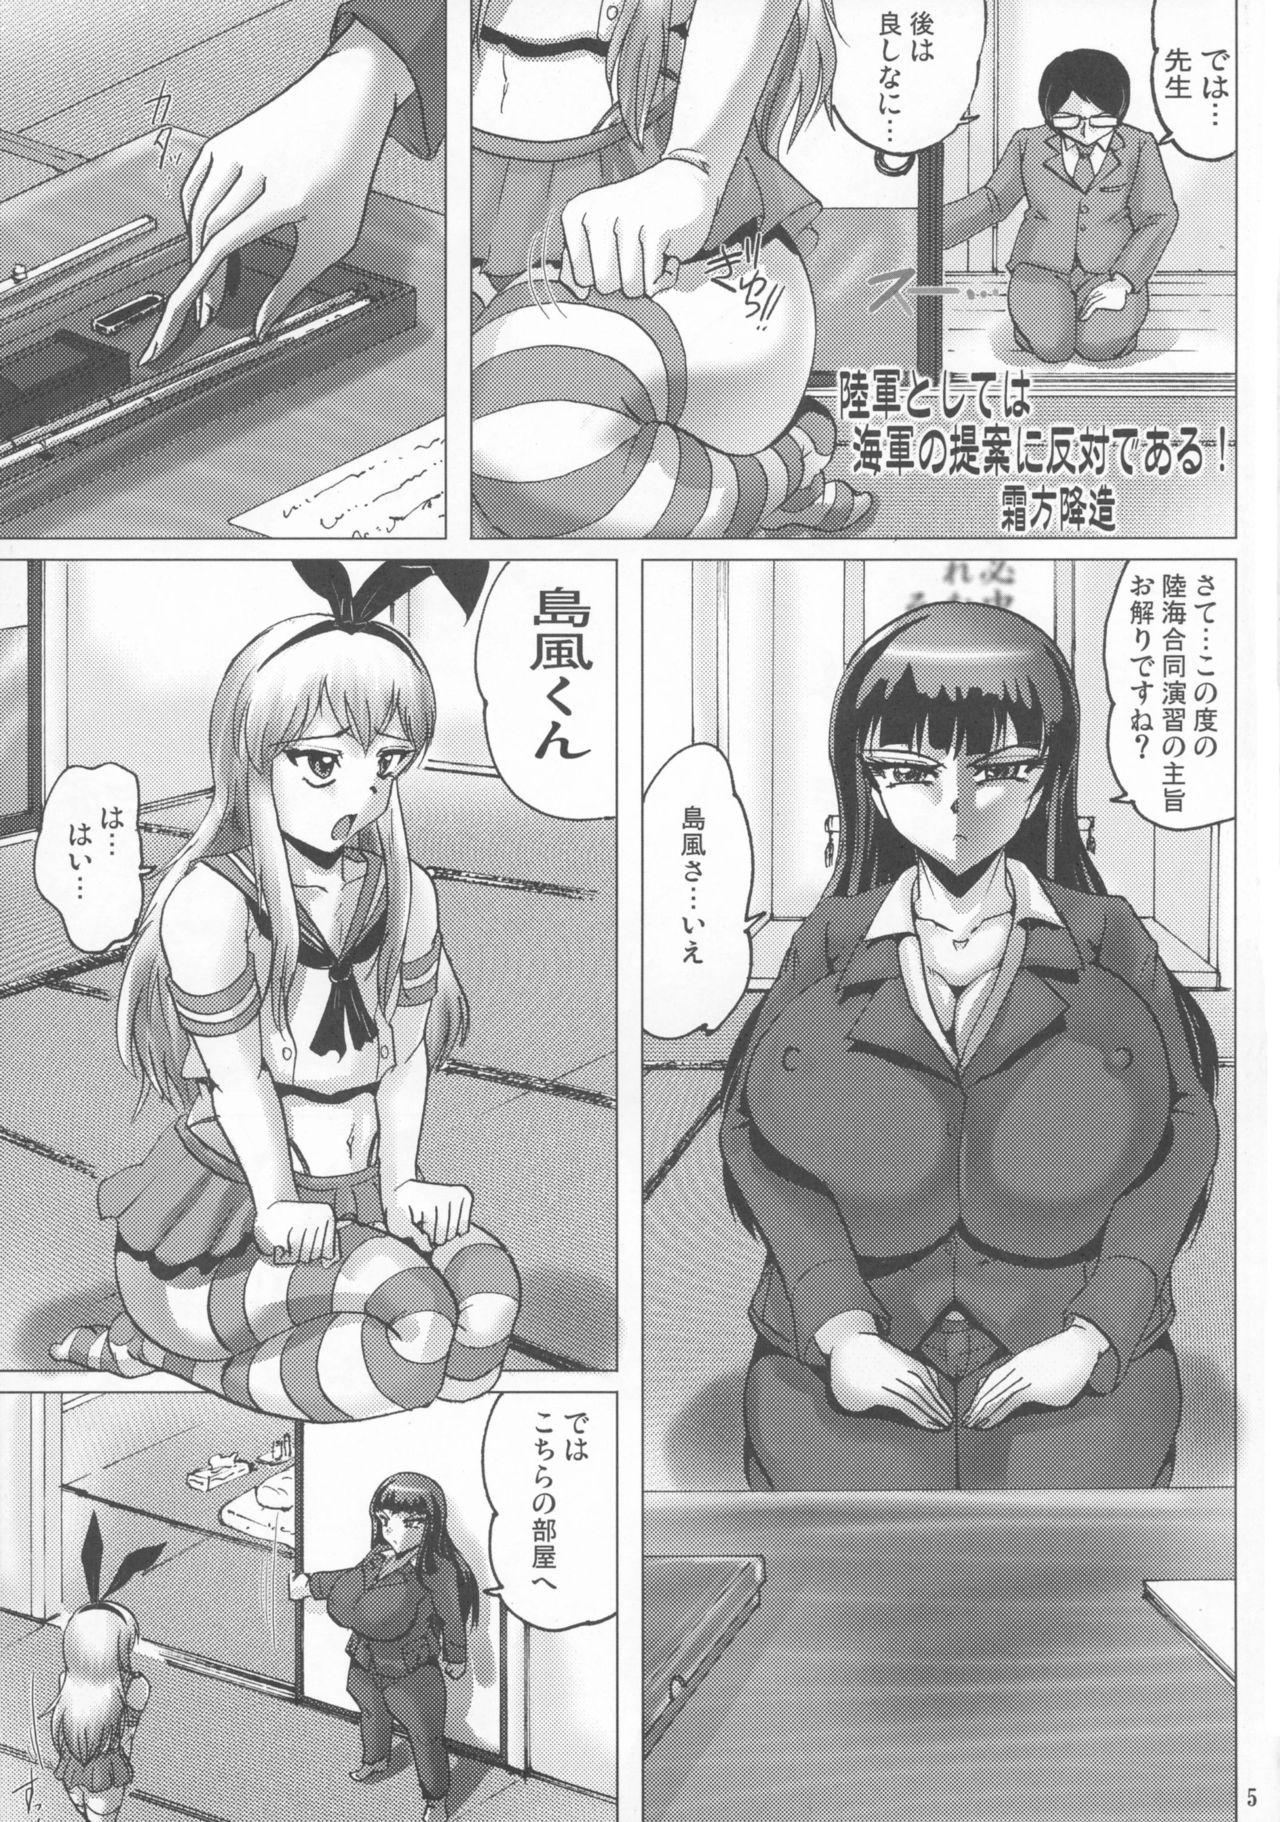 Chicks Shin Hanzyuuryoku 33 - Kantai collection Dungeon ni deai o motomeru no wa machigatteiru darou ka Threesome - Page 5